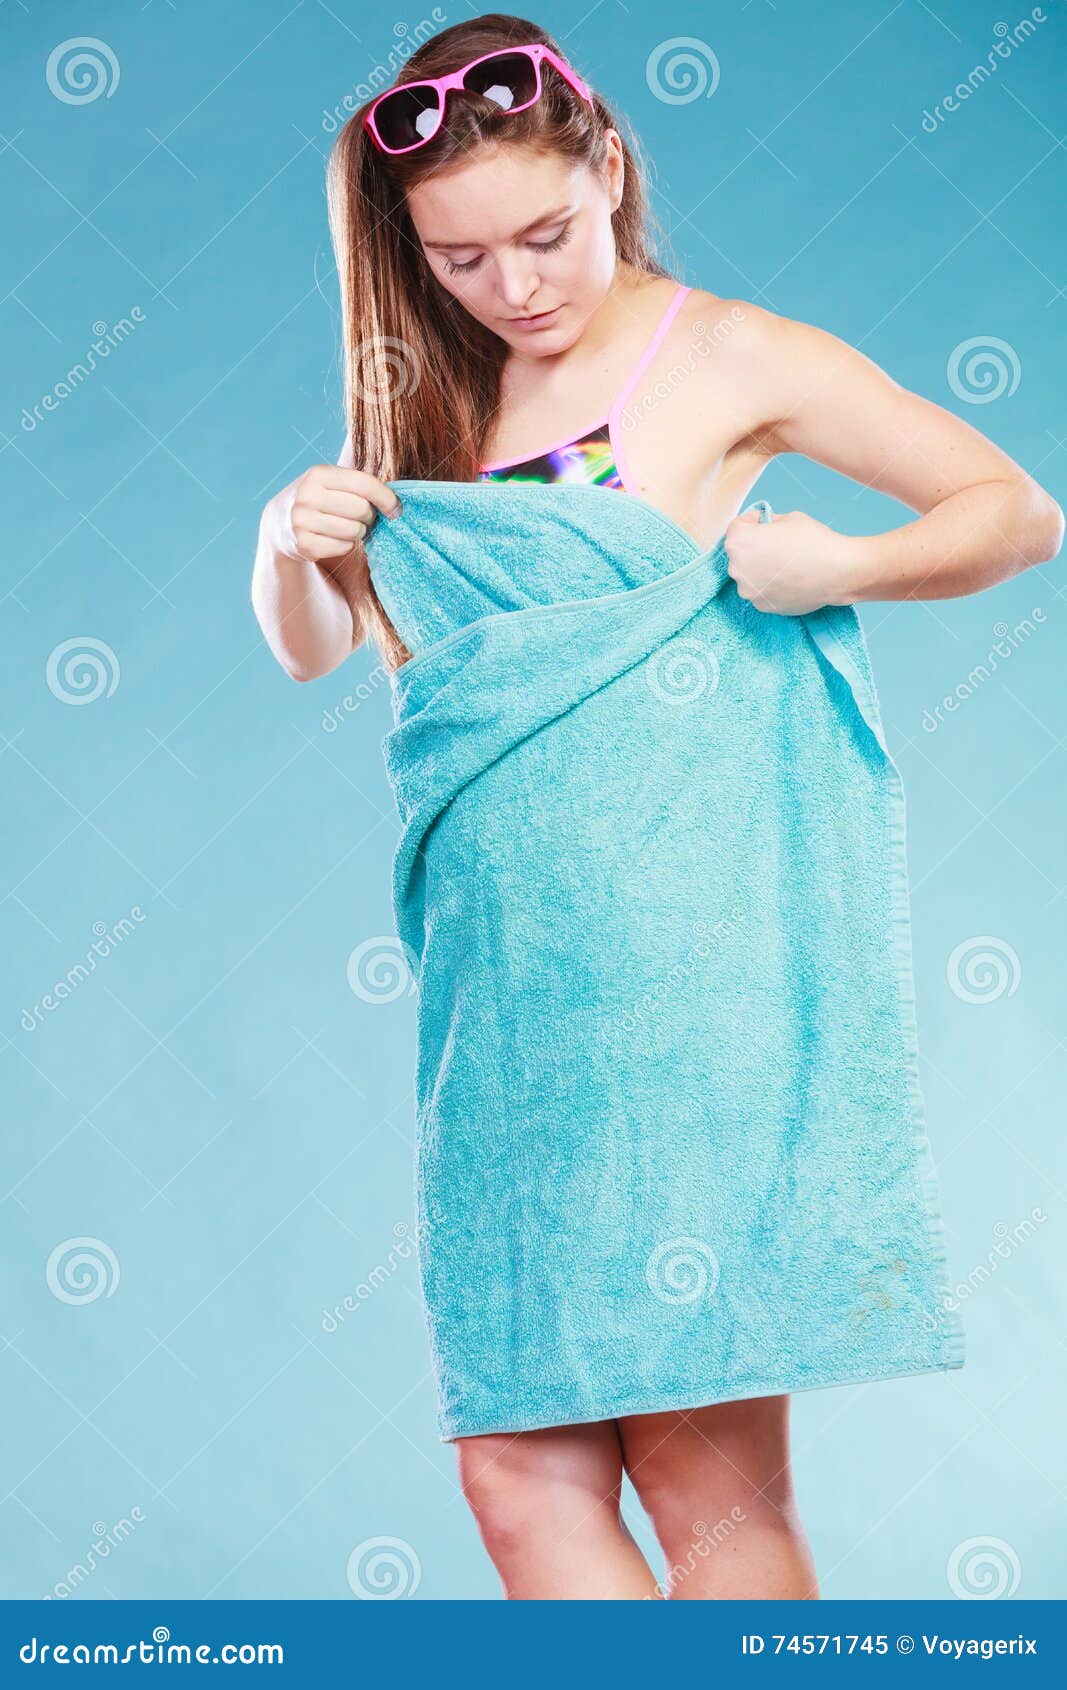 Ходит в полотенце. Купальник и полотенце. Юные в полотенце. Девушка в полотенце. Полотенце с девушкой в купальнике.